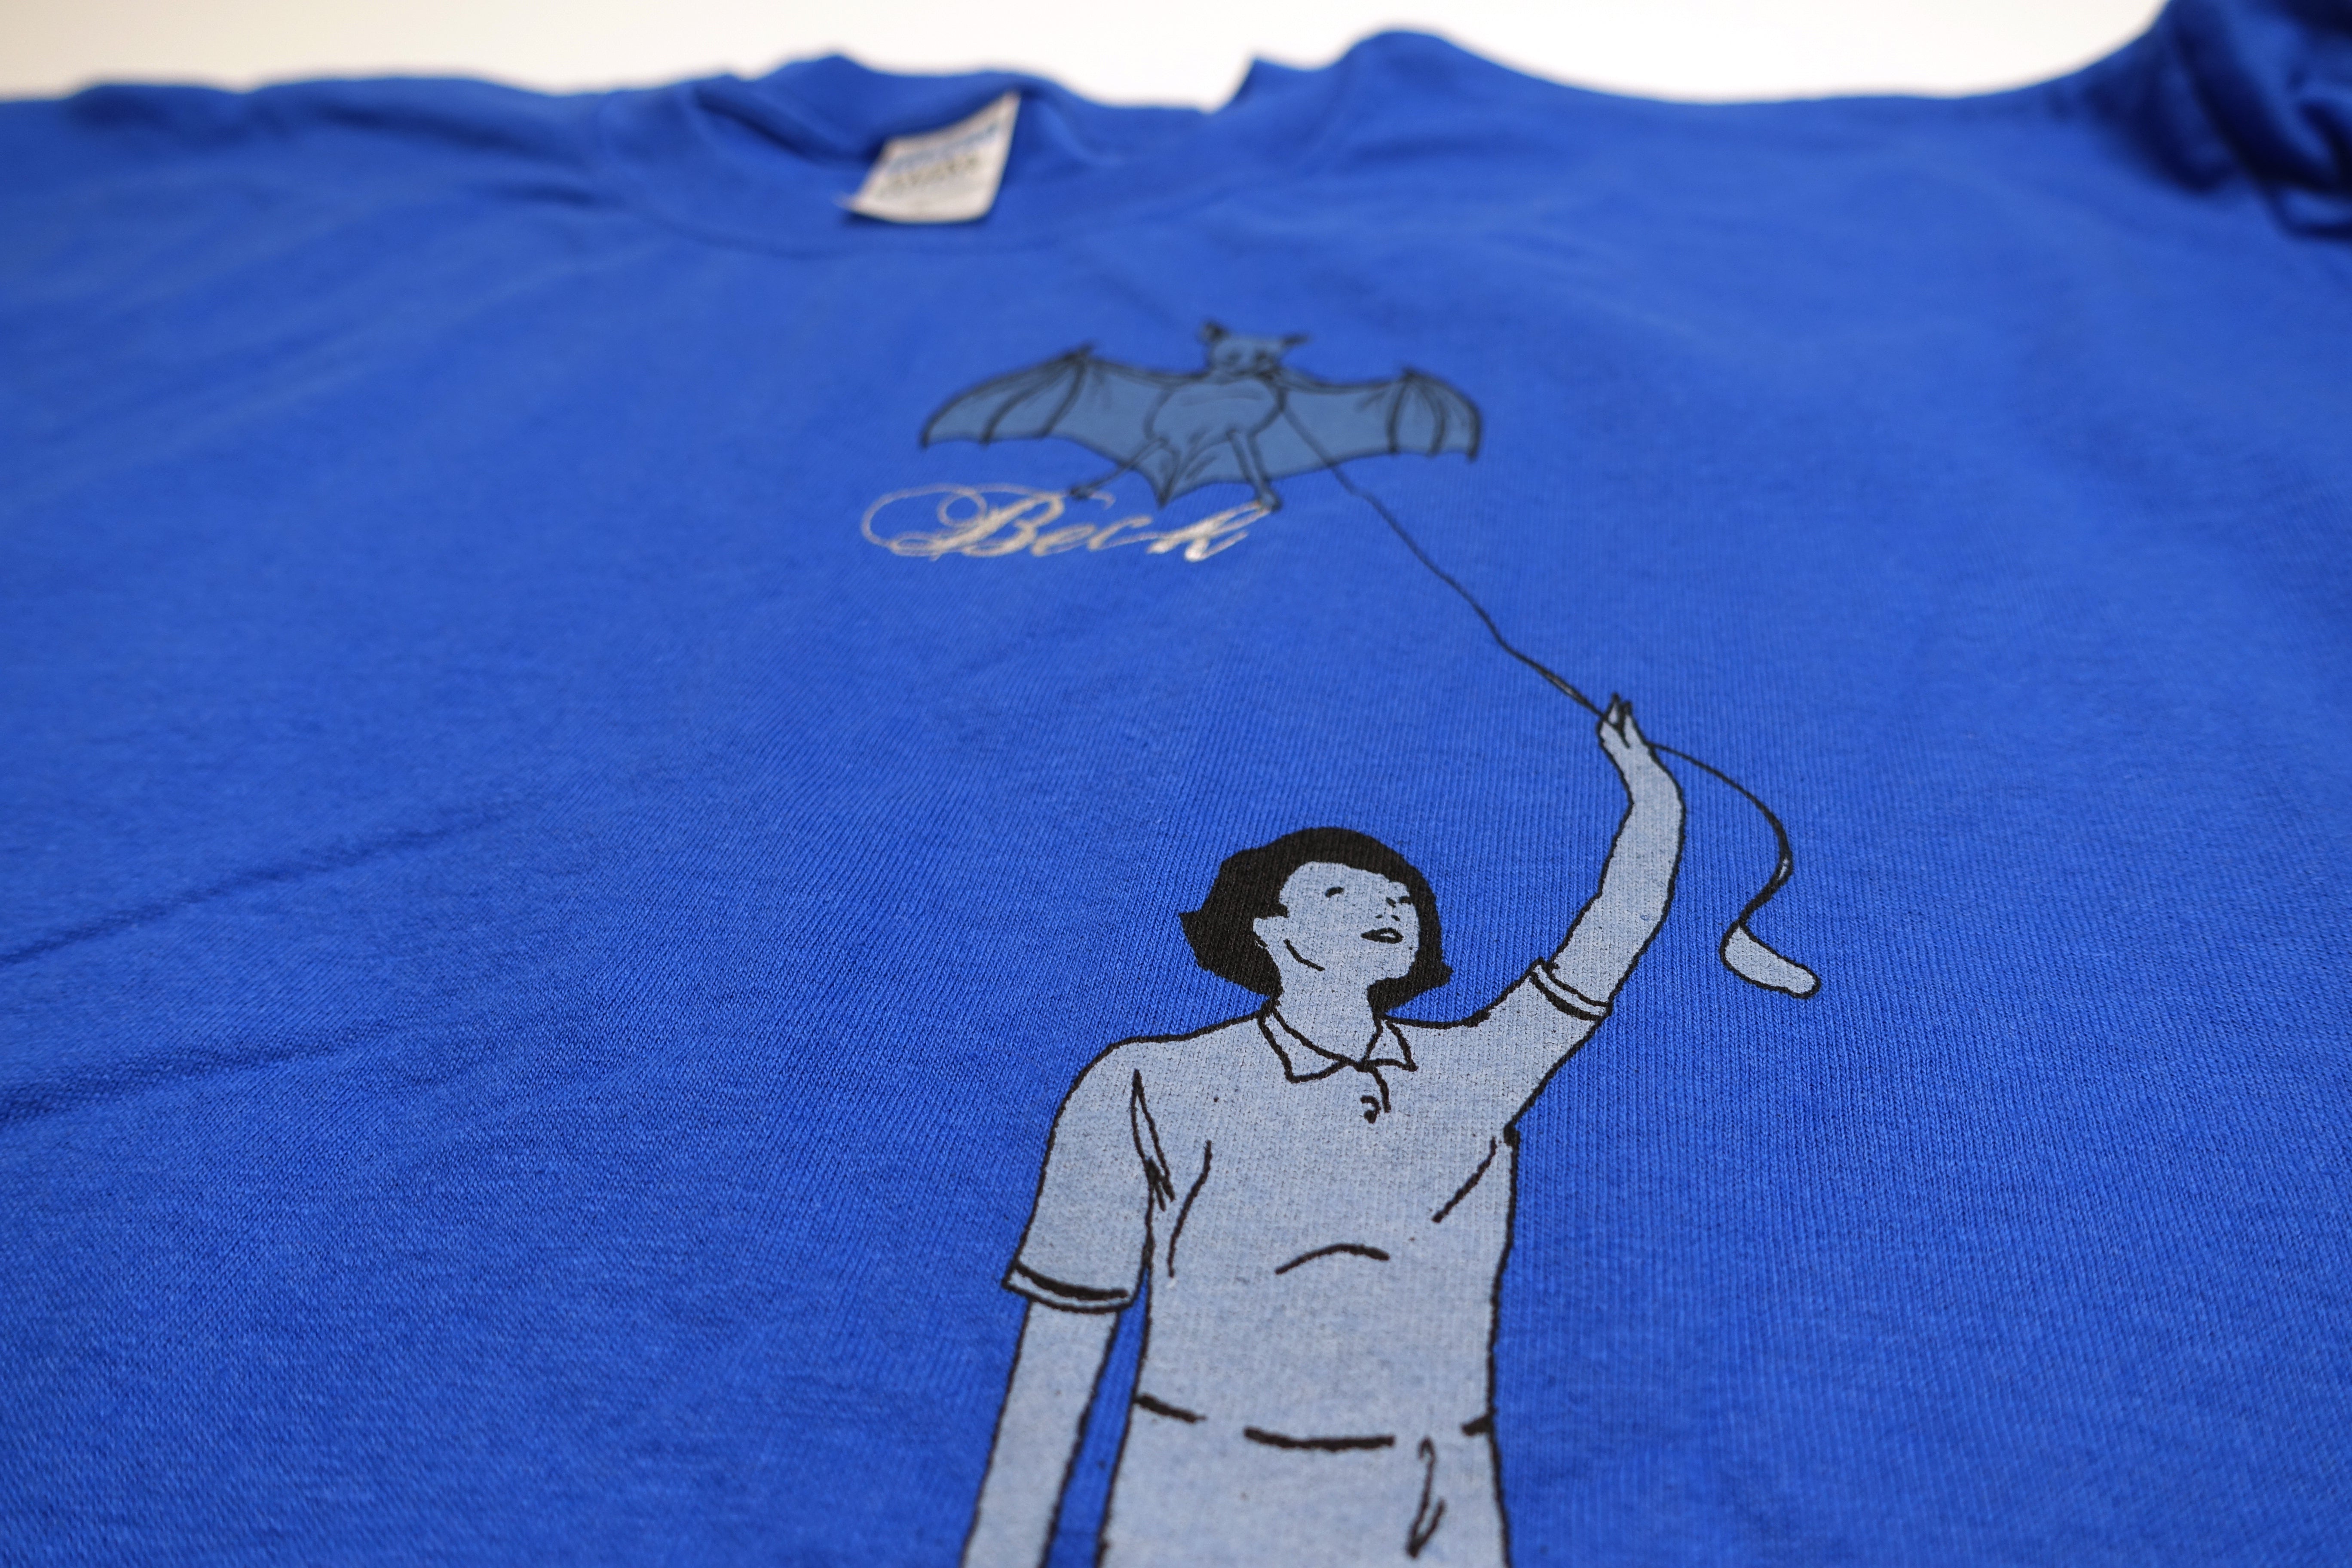 Beck ‎– Guerolito Bat Flyer 2005 Tour Shirt Size XL